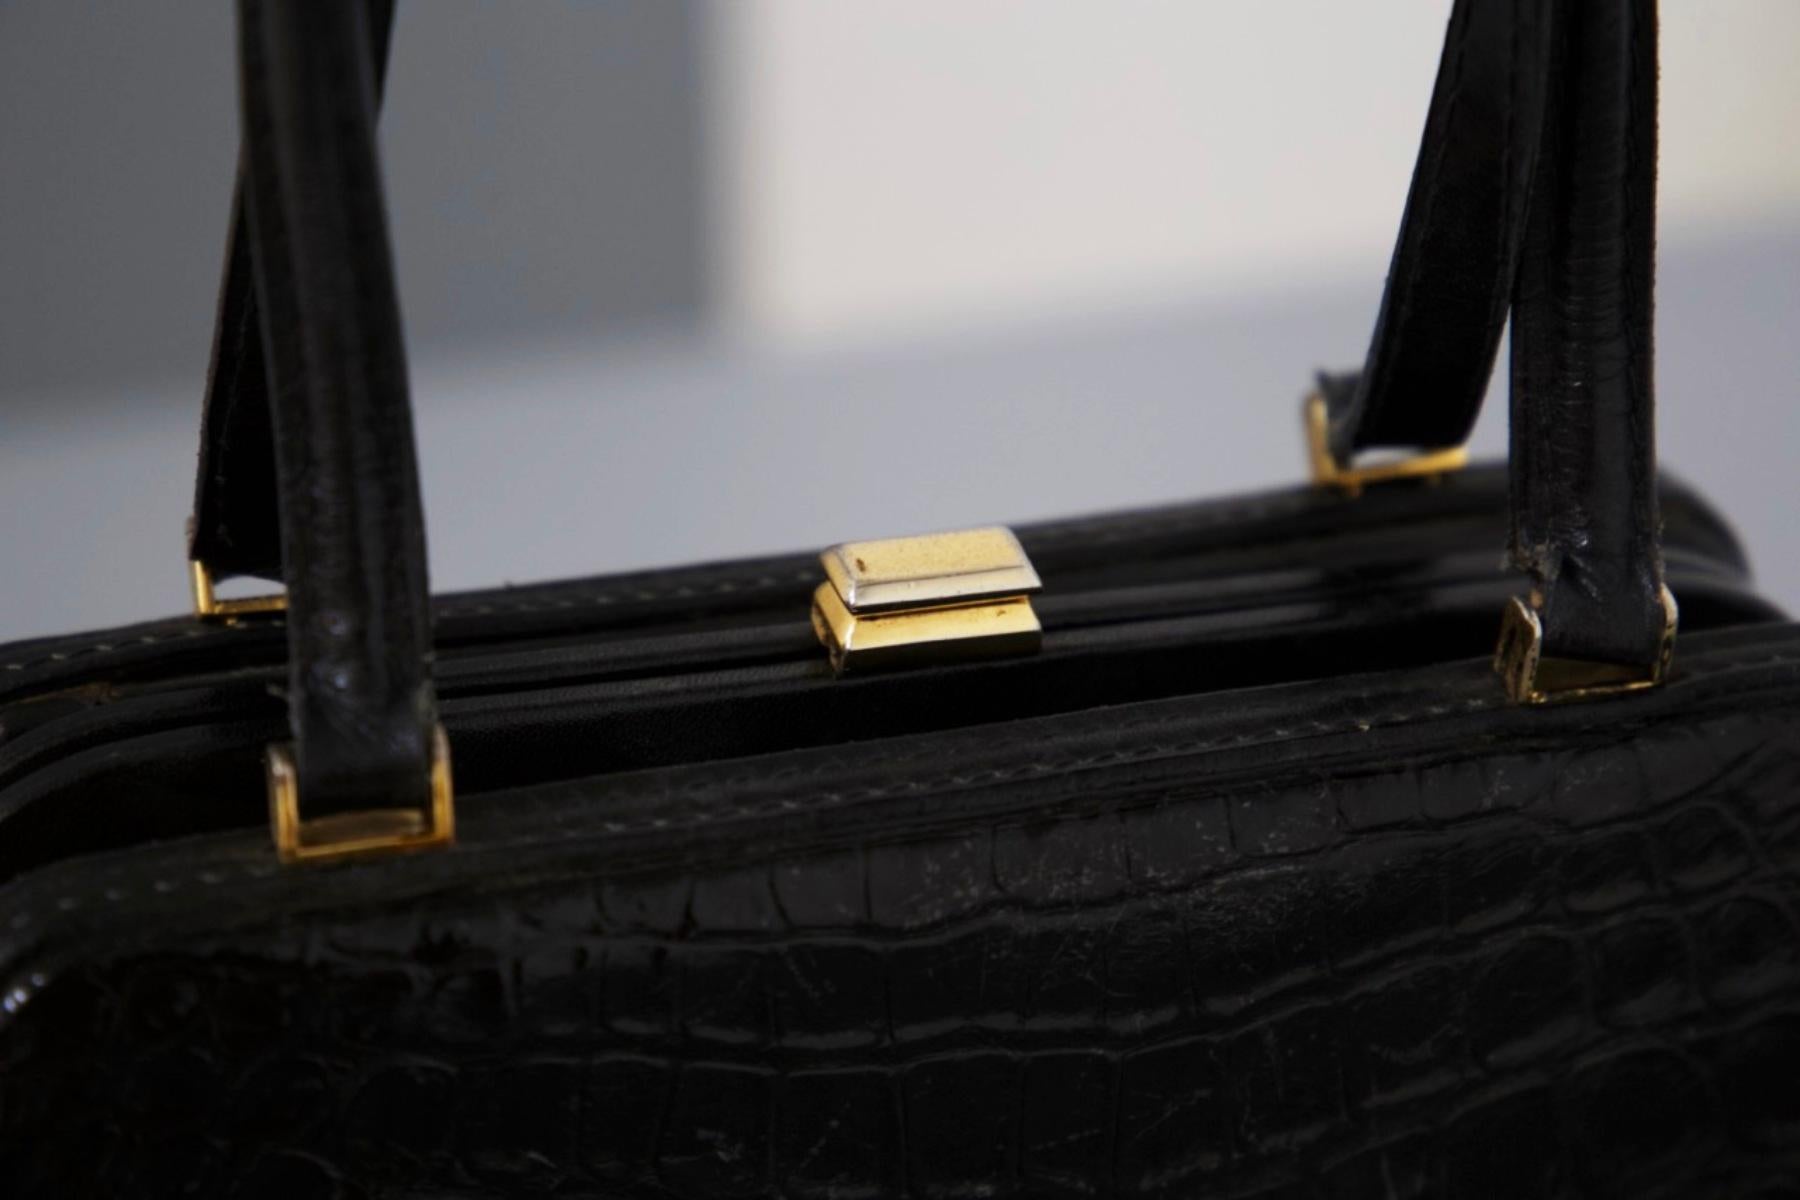 Wunderschöne schwarze Ledertasche, entworfen in den 1980er Jahren, italienische Herstellung.
Die Tasche hat eine rechteckige Form und ist ganz aus Leder, mit glänzender Krokodilstruktur, sehr sinnlich und elegant.
Die Handtasche hat die interne